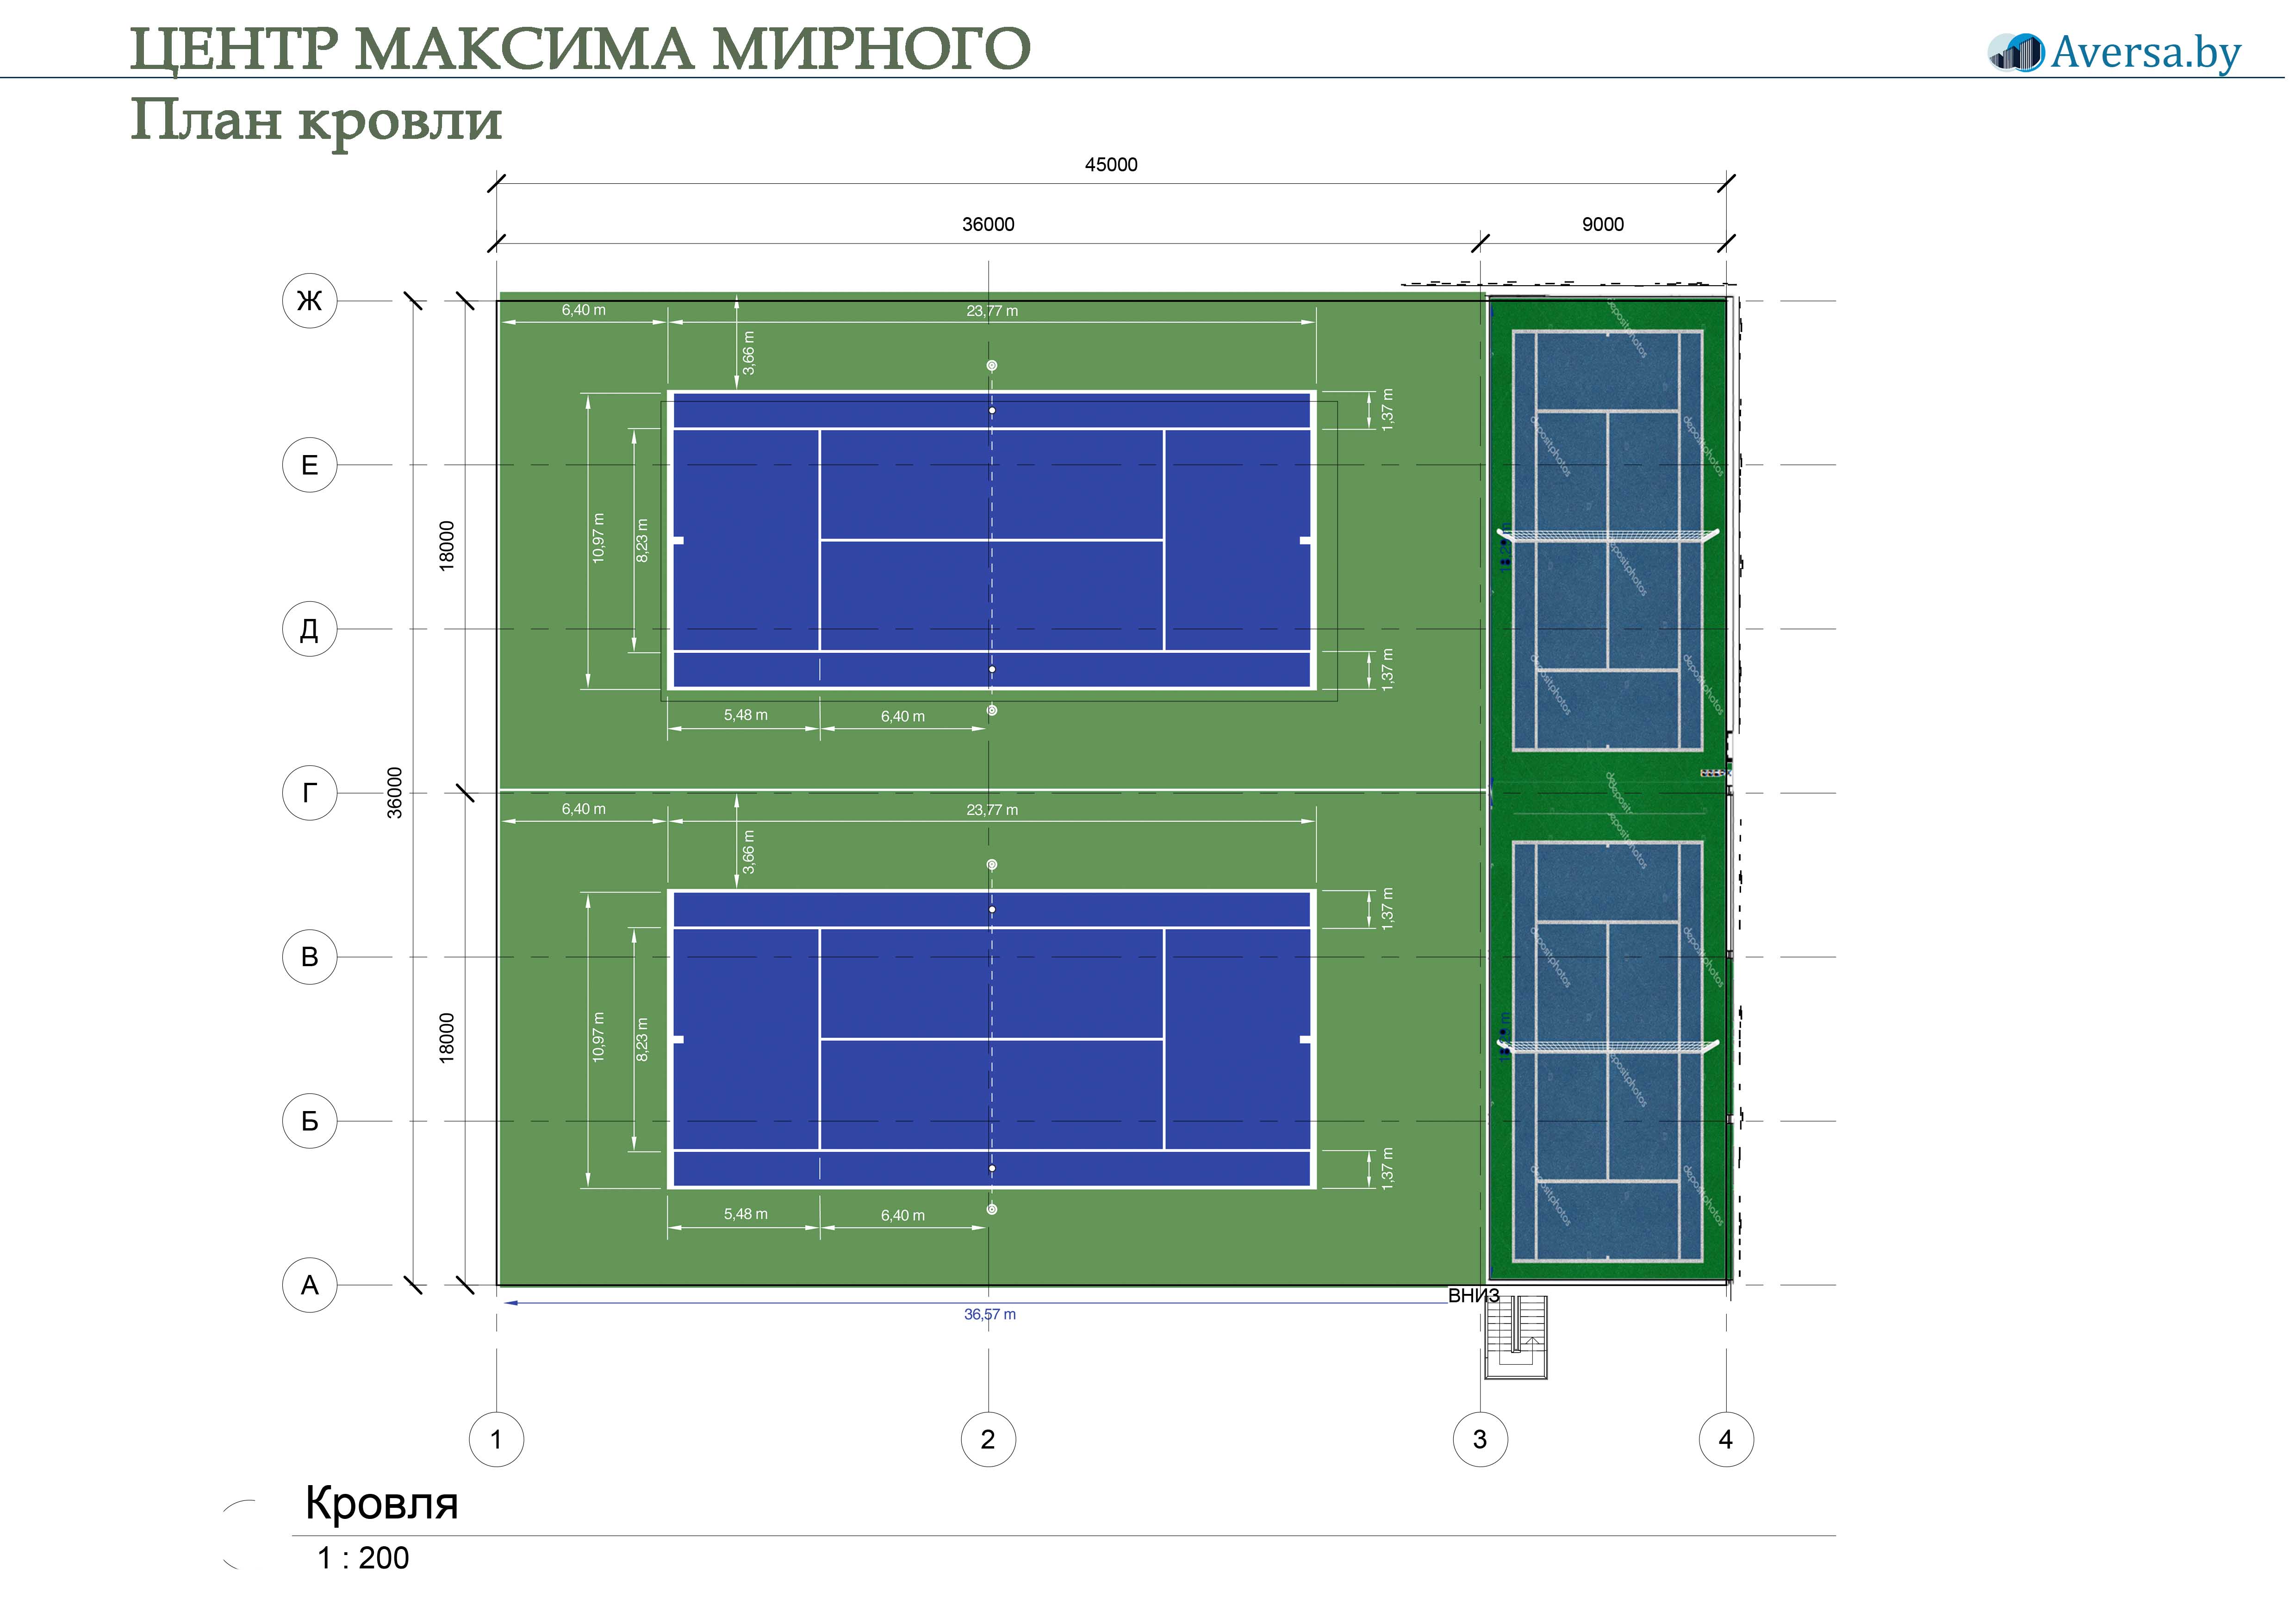 Max Mirnyi Center Центр Максима Мирного Теннисный центр 